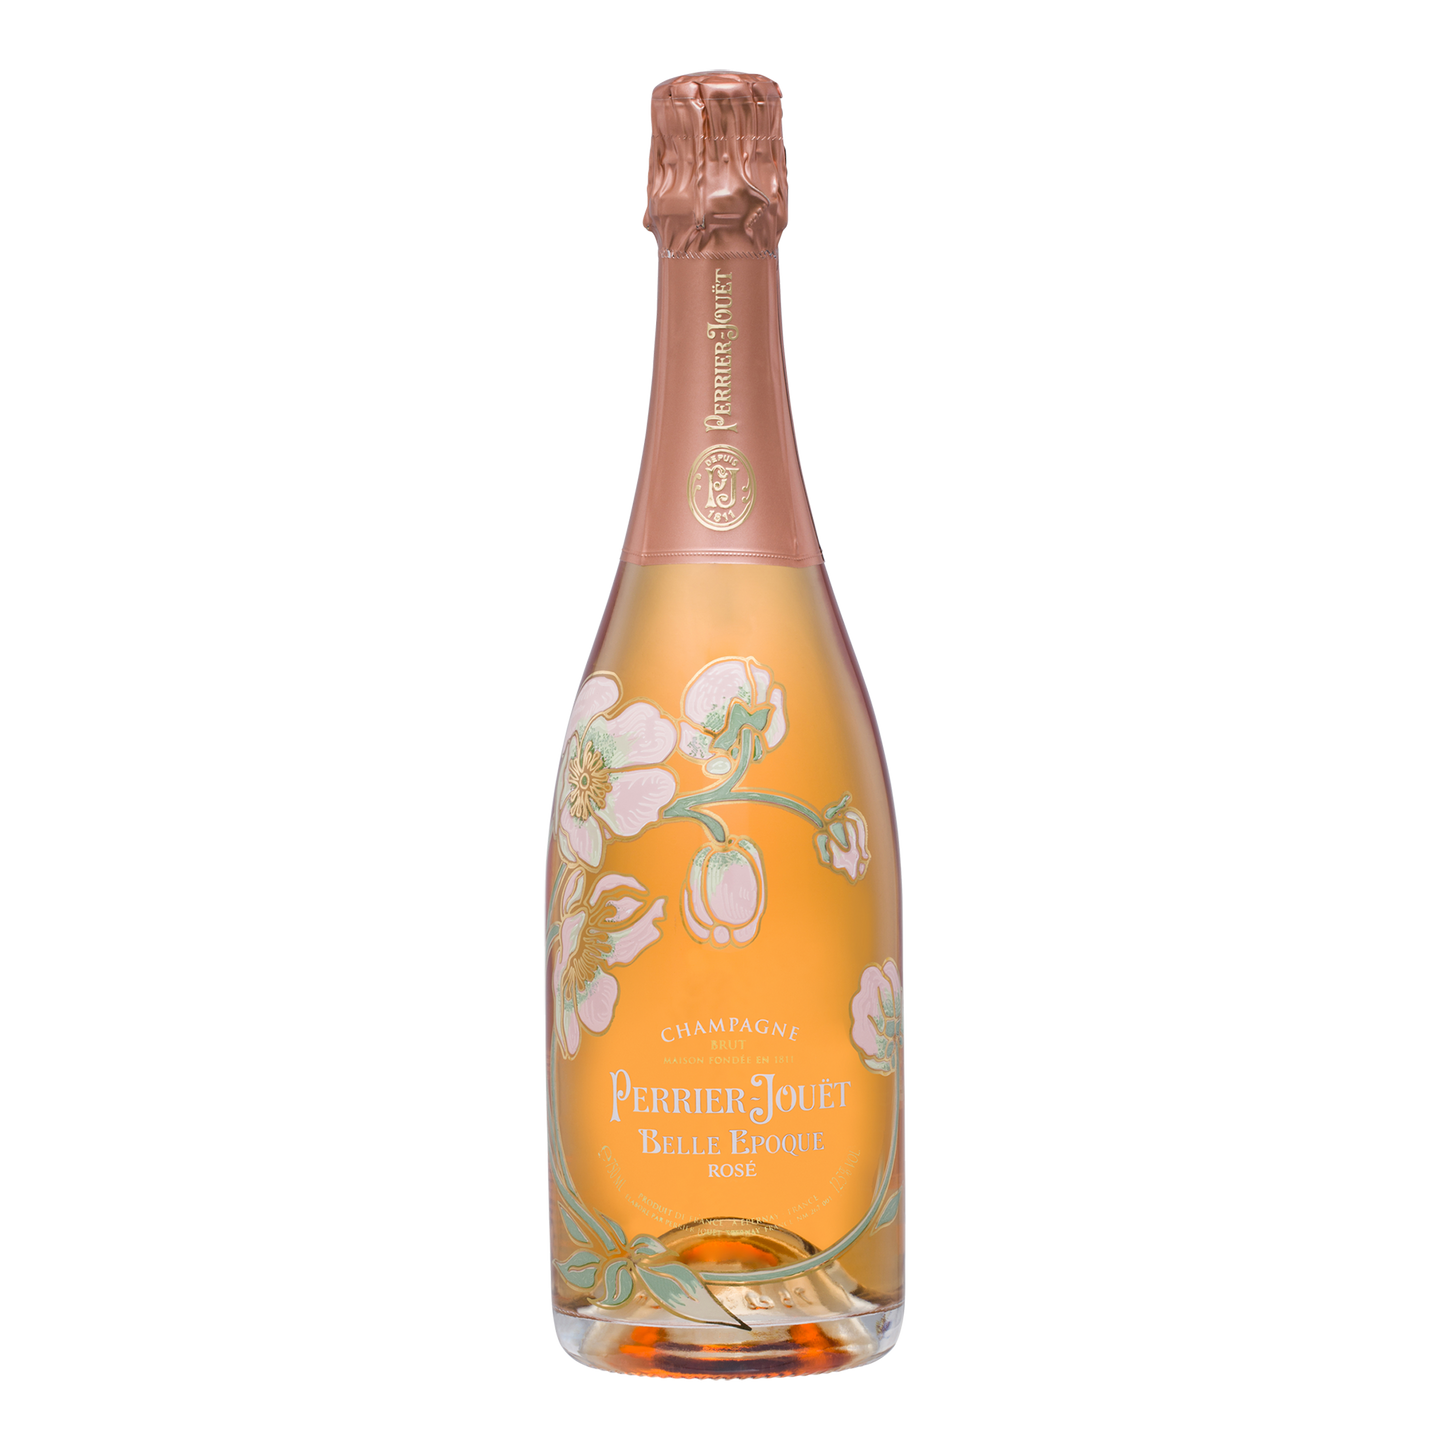 Perrier-Jouët Belle Époque Rosé Champagne 2013